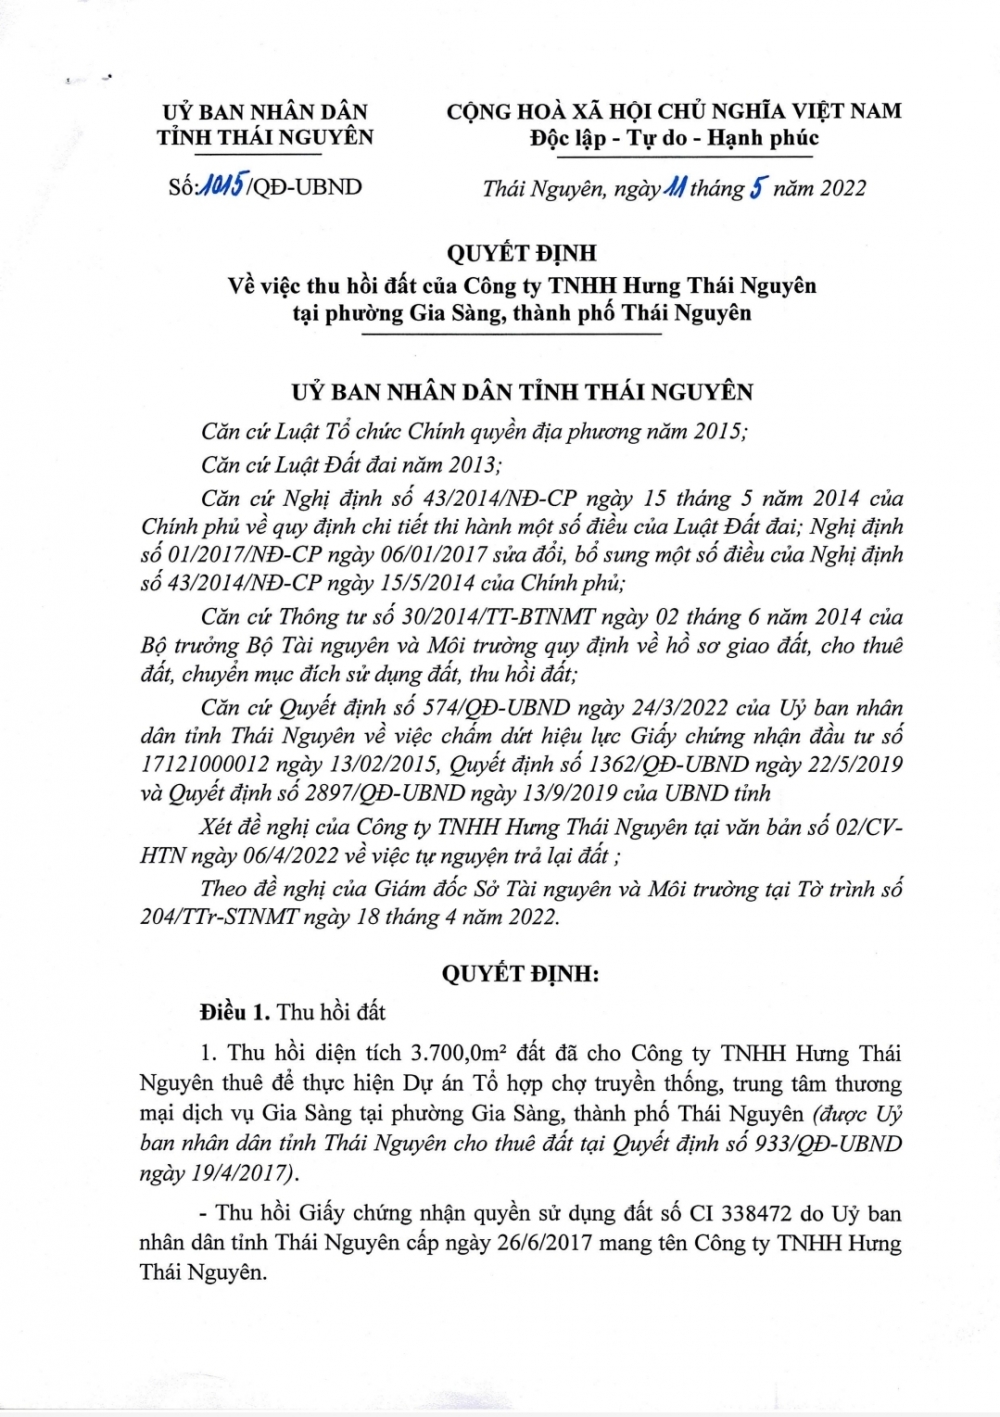 Thái Nguyên: Chấm dứt Dự án trung tâm thương mại của Công ty Hưng Thái Nguyên